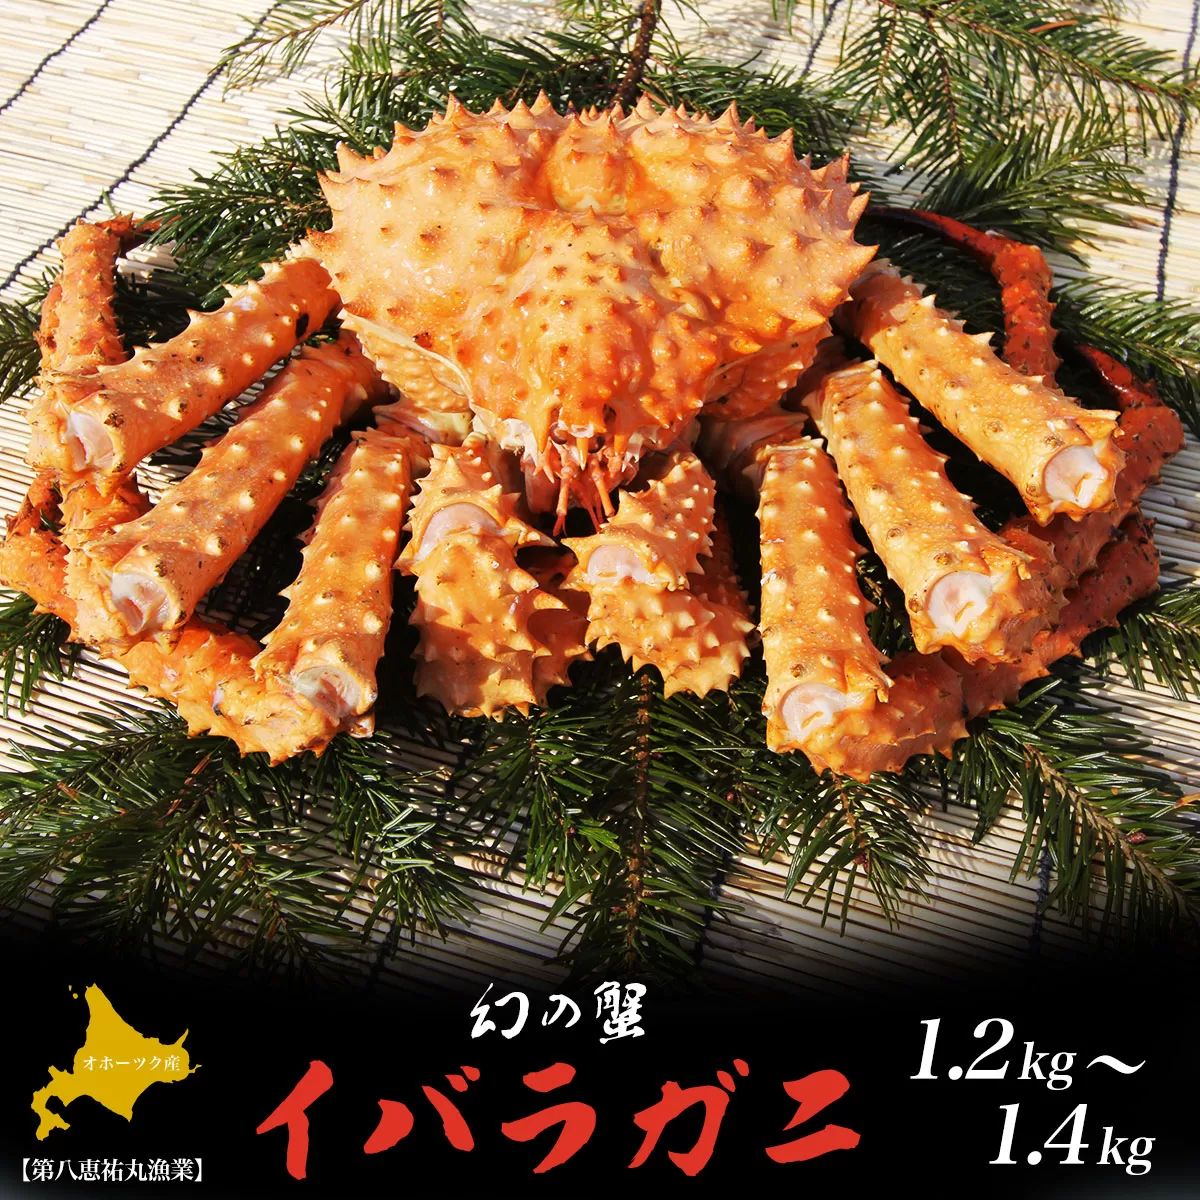 オホーツク産 幻の蟹 イバラガニ 1.2〜1.4kg SRMN013